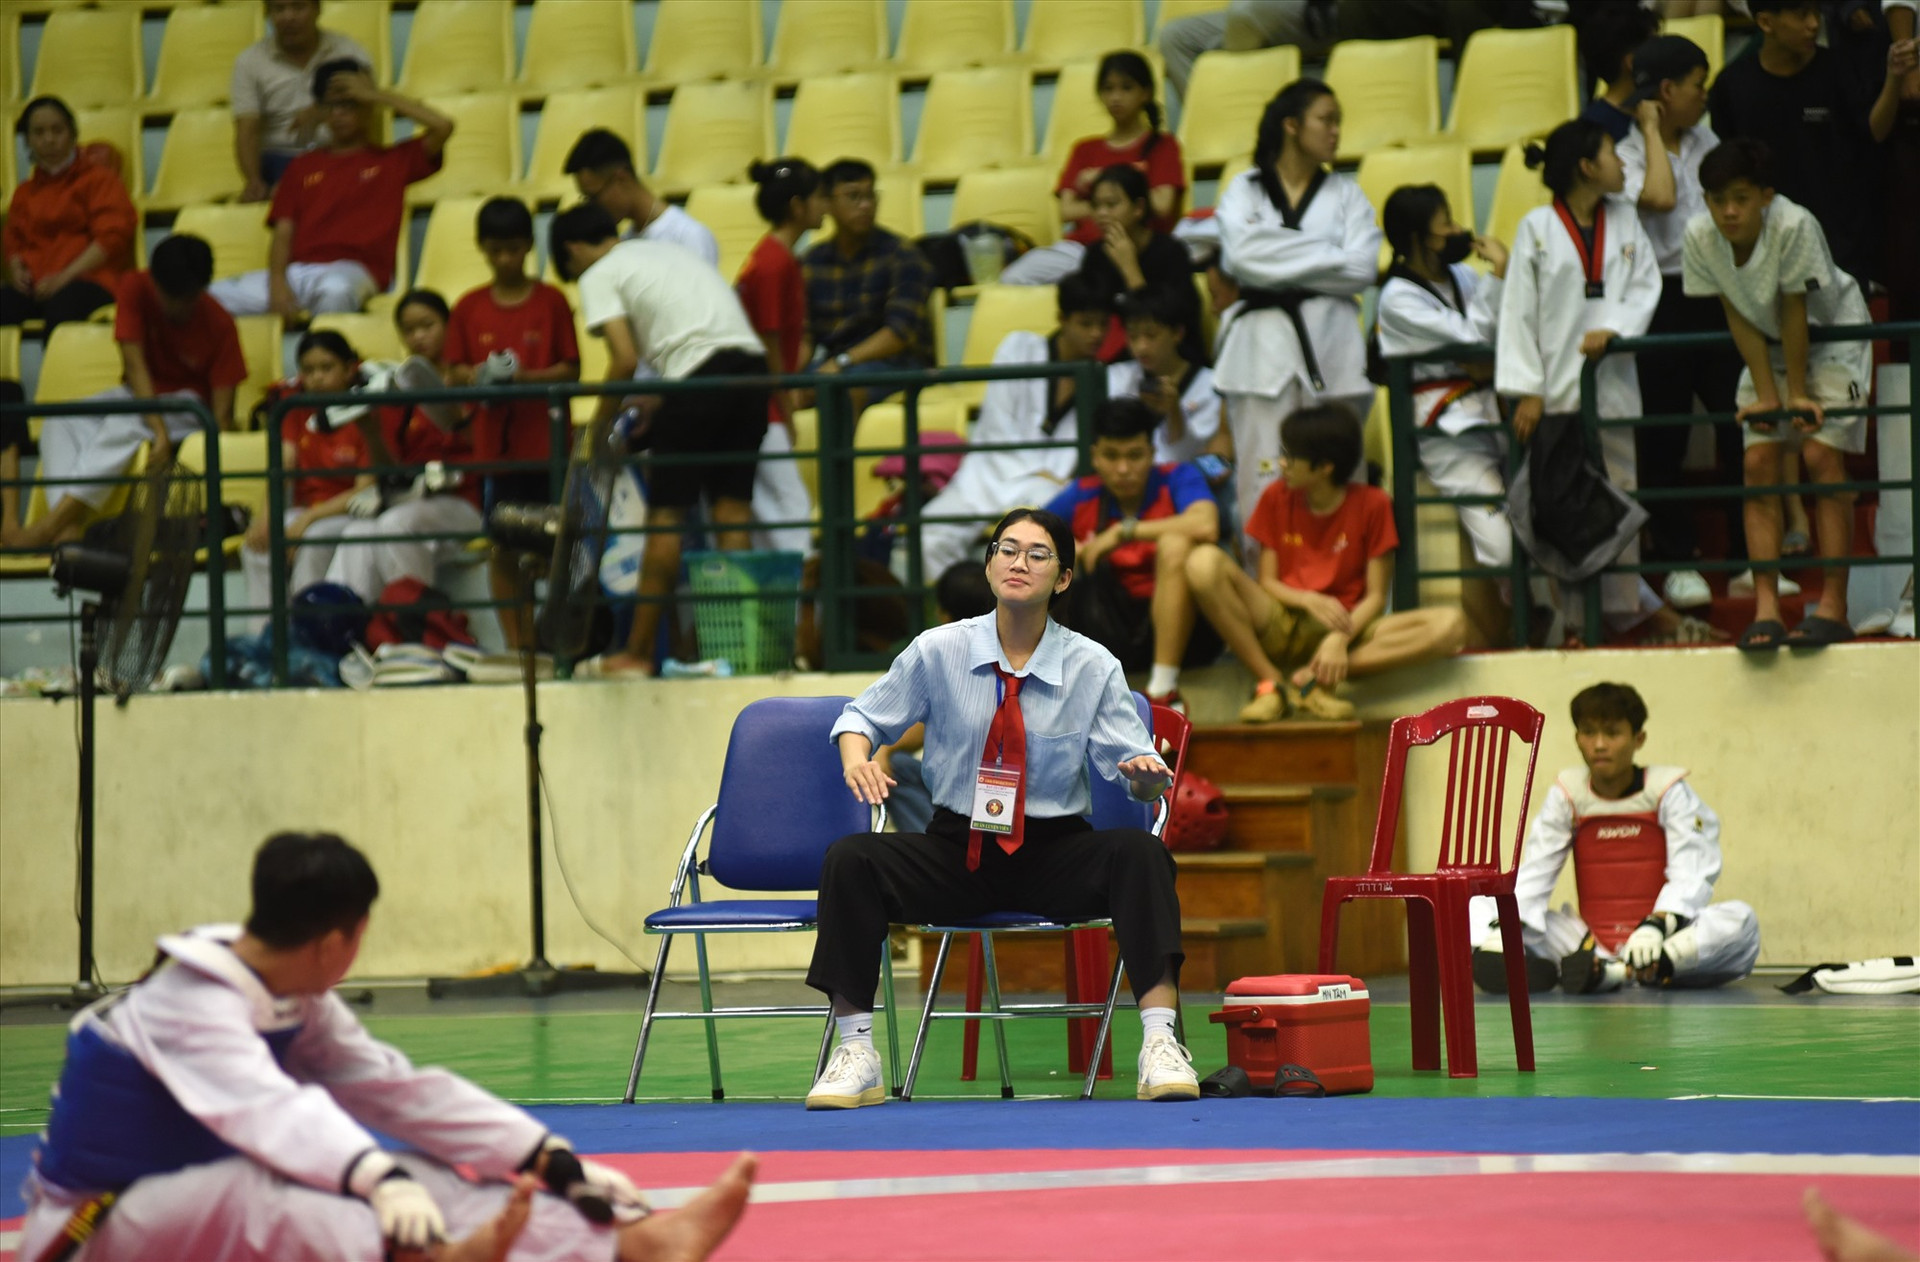 Cô gái vàng của thể thao xứ Quảng Phạm Thị Thu Hiền xuất hiện với vai trò chỉ đạo cho vận động viên Tam Kỳ thi đấu. Ảnh: T.V